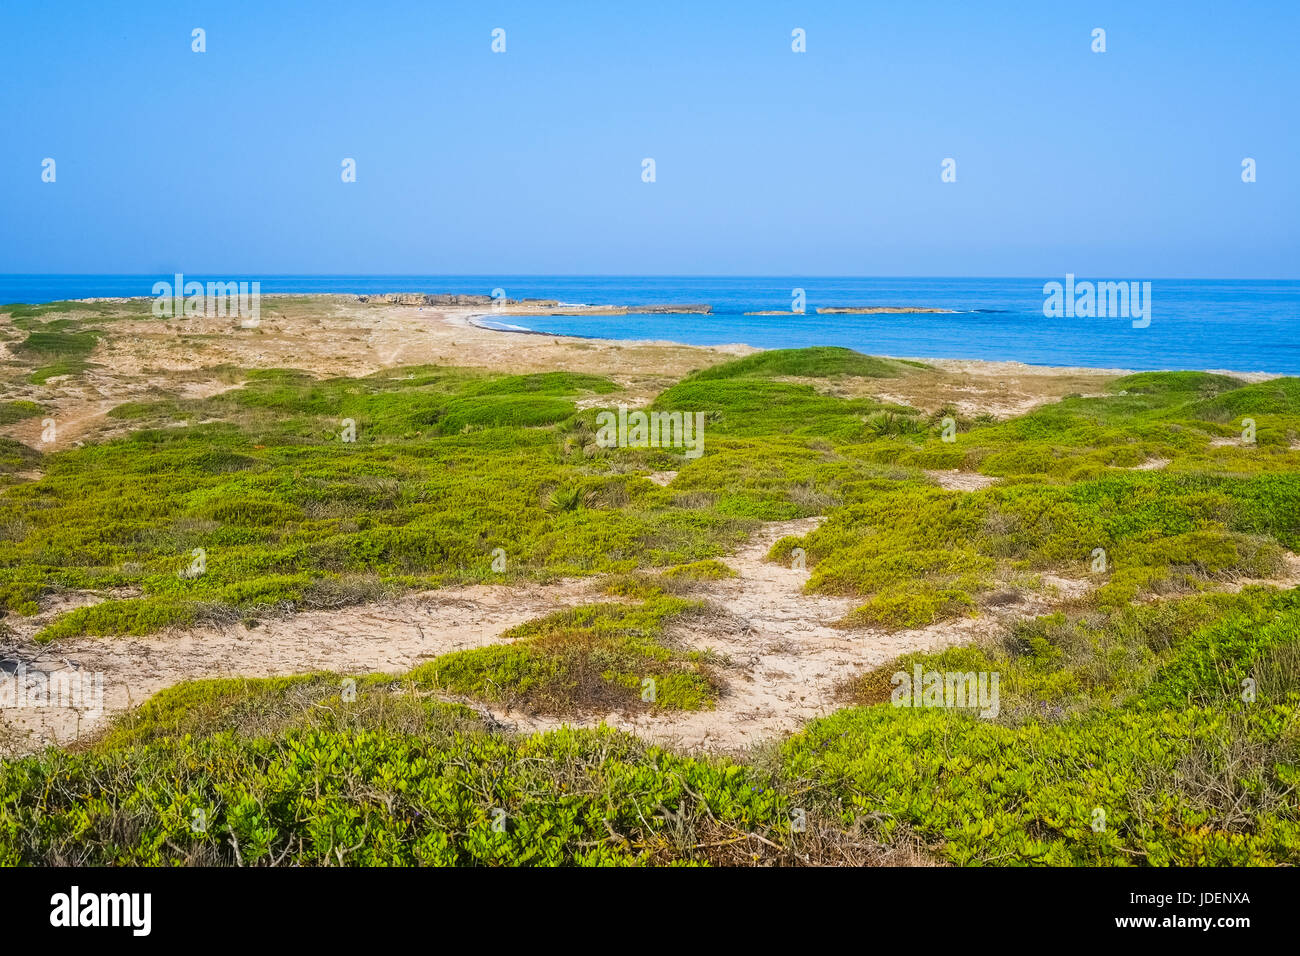 Beach in area marina protetta del Sinai, Sardinia, Italy Stock Photo